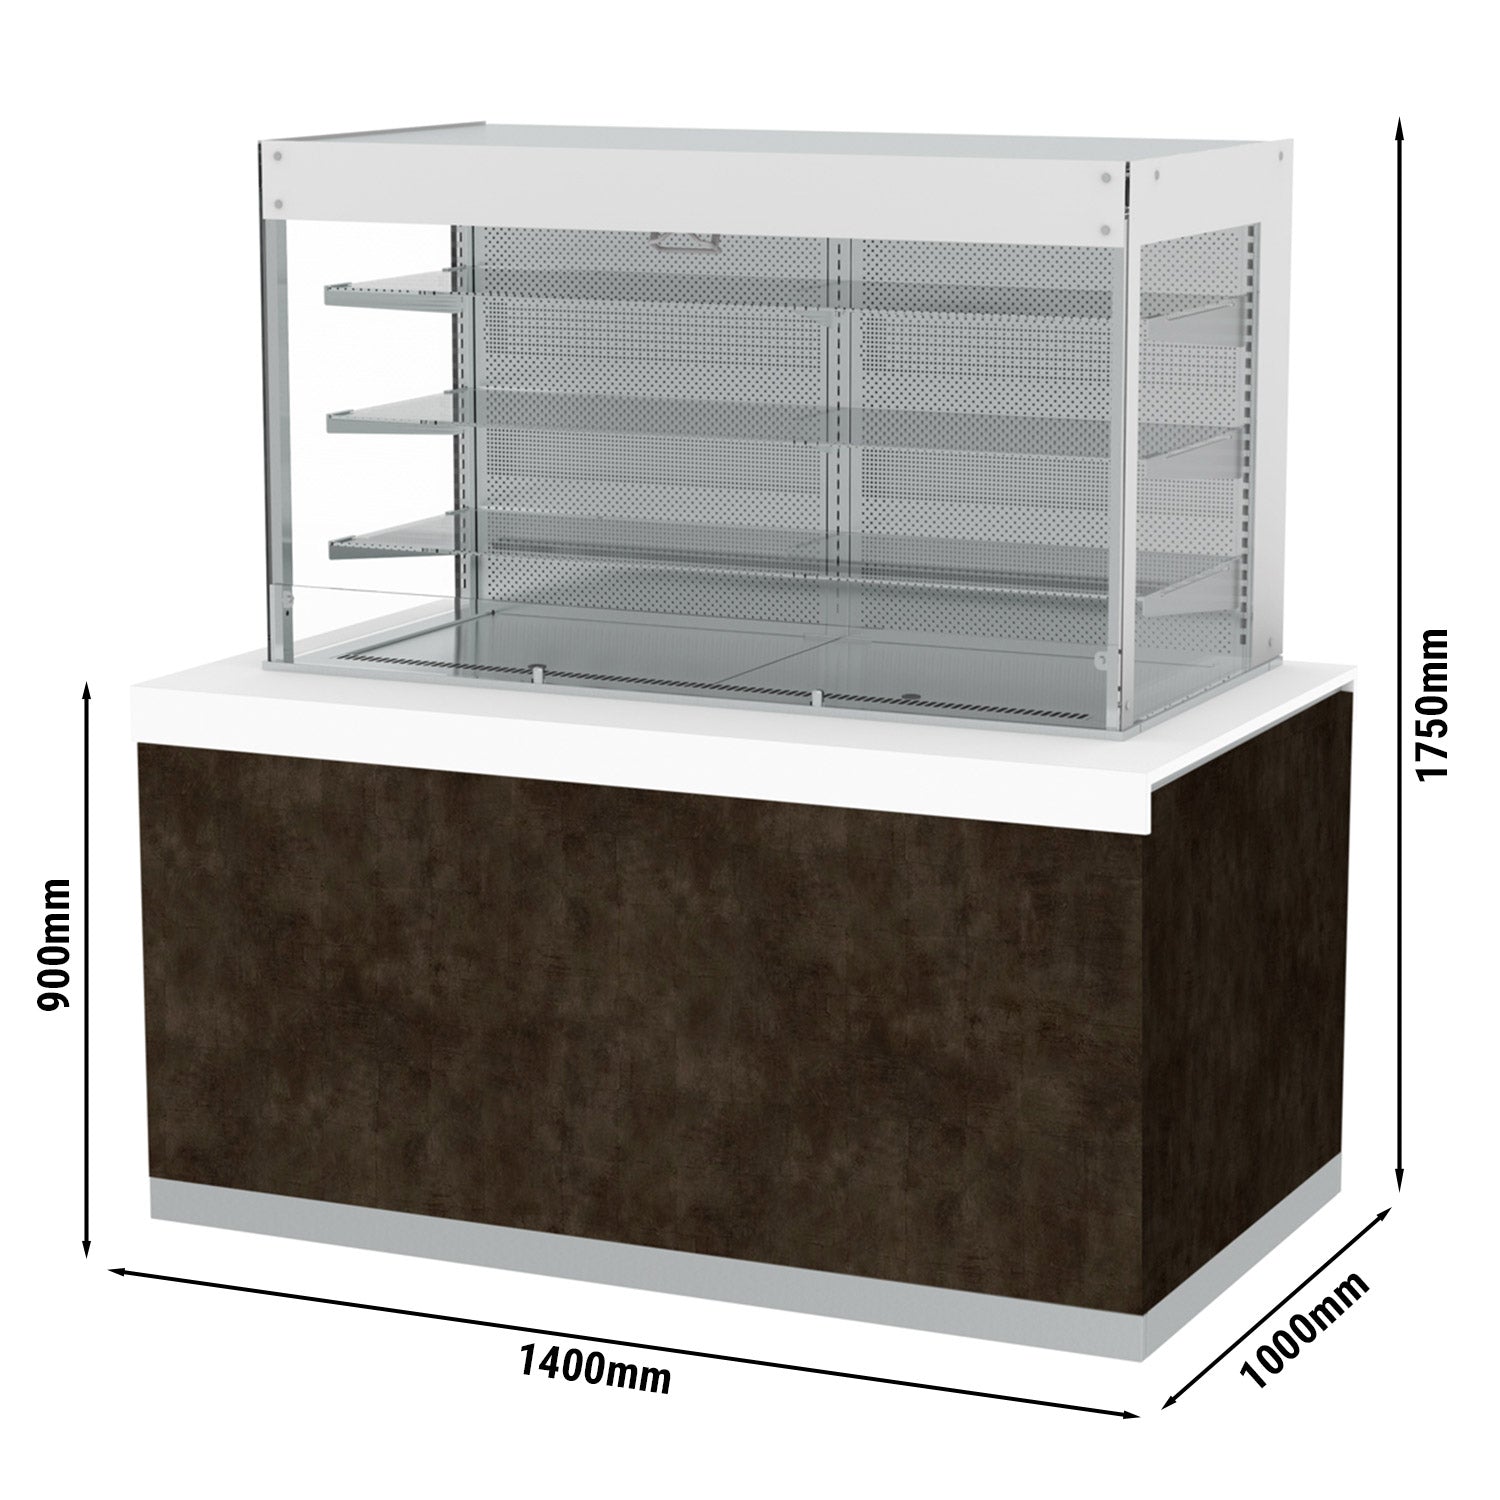 Хладилна витрина - 1,4 х 1,0 м - 640 литра - с 3 рафта